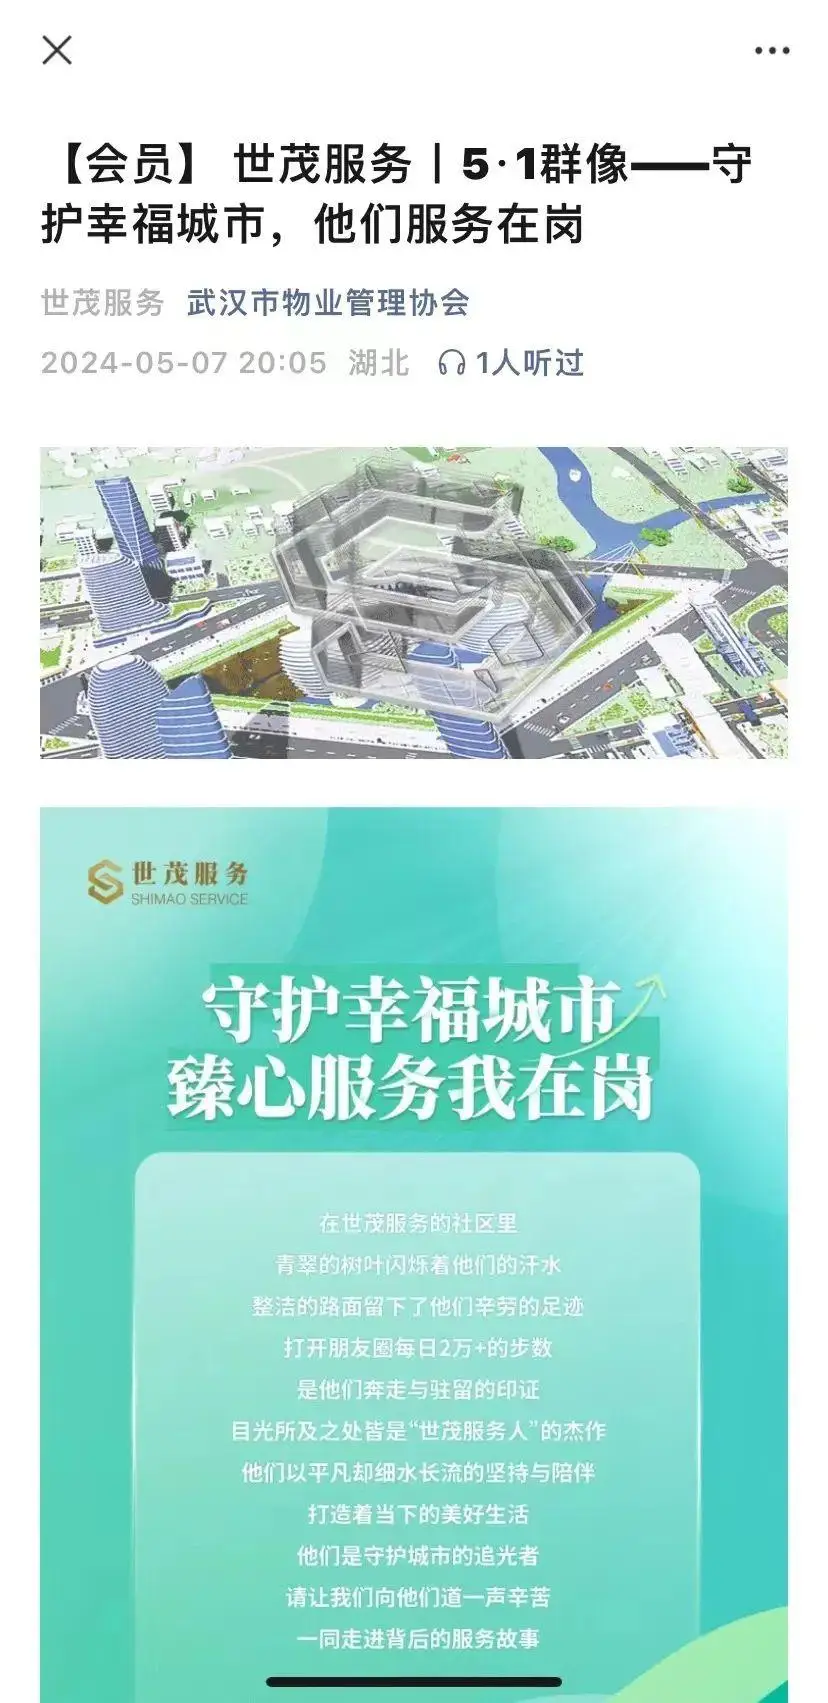 上海 5G 网络覆盖区域待明确，浦东新区成落地推广典范  第1张